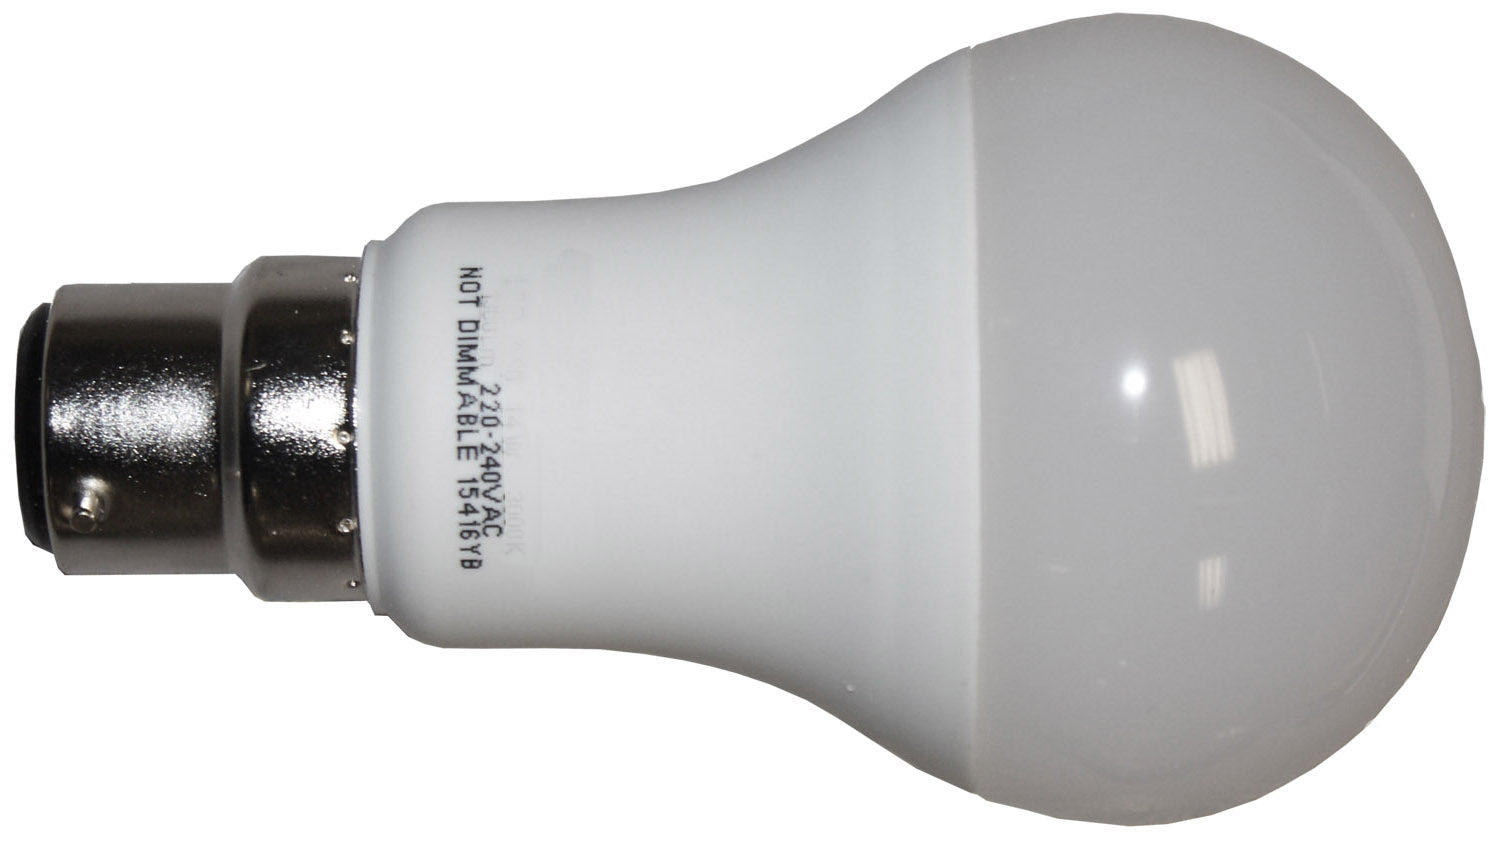 B22 standaard bajonetkap - LED-servicelampen 240v-13w - spo-cs-uitgeschakeld - spo-standaard - spo-uitgeschakeld - spo-notify-me-di